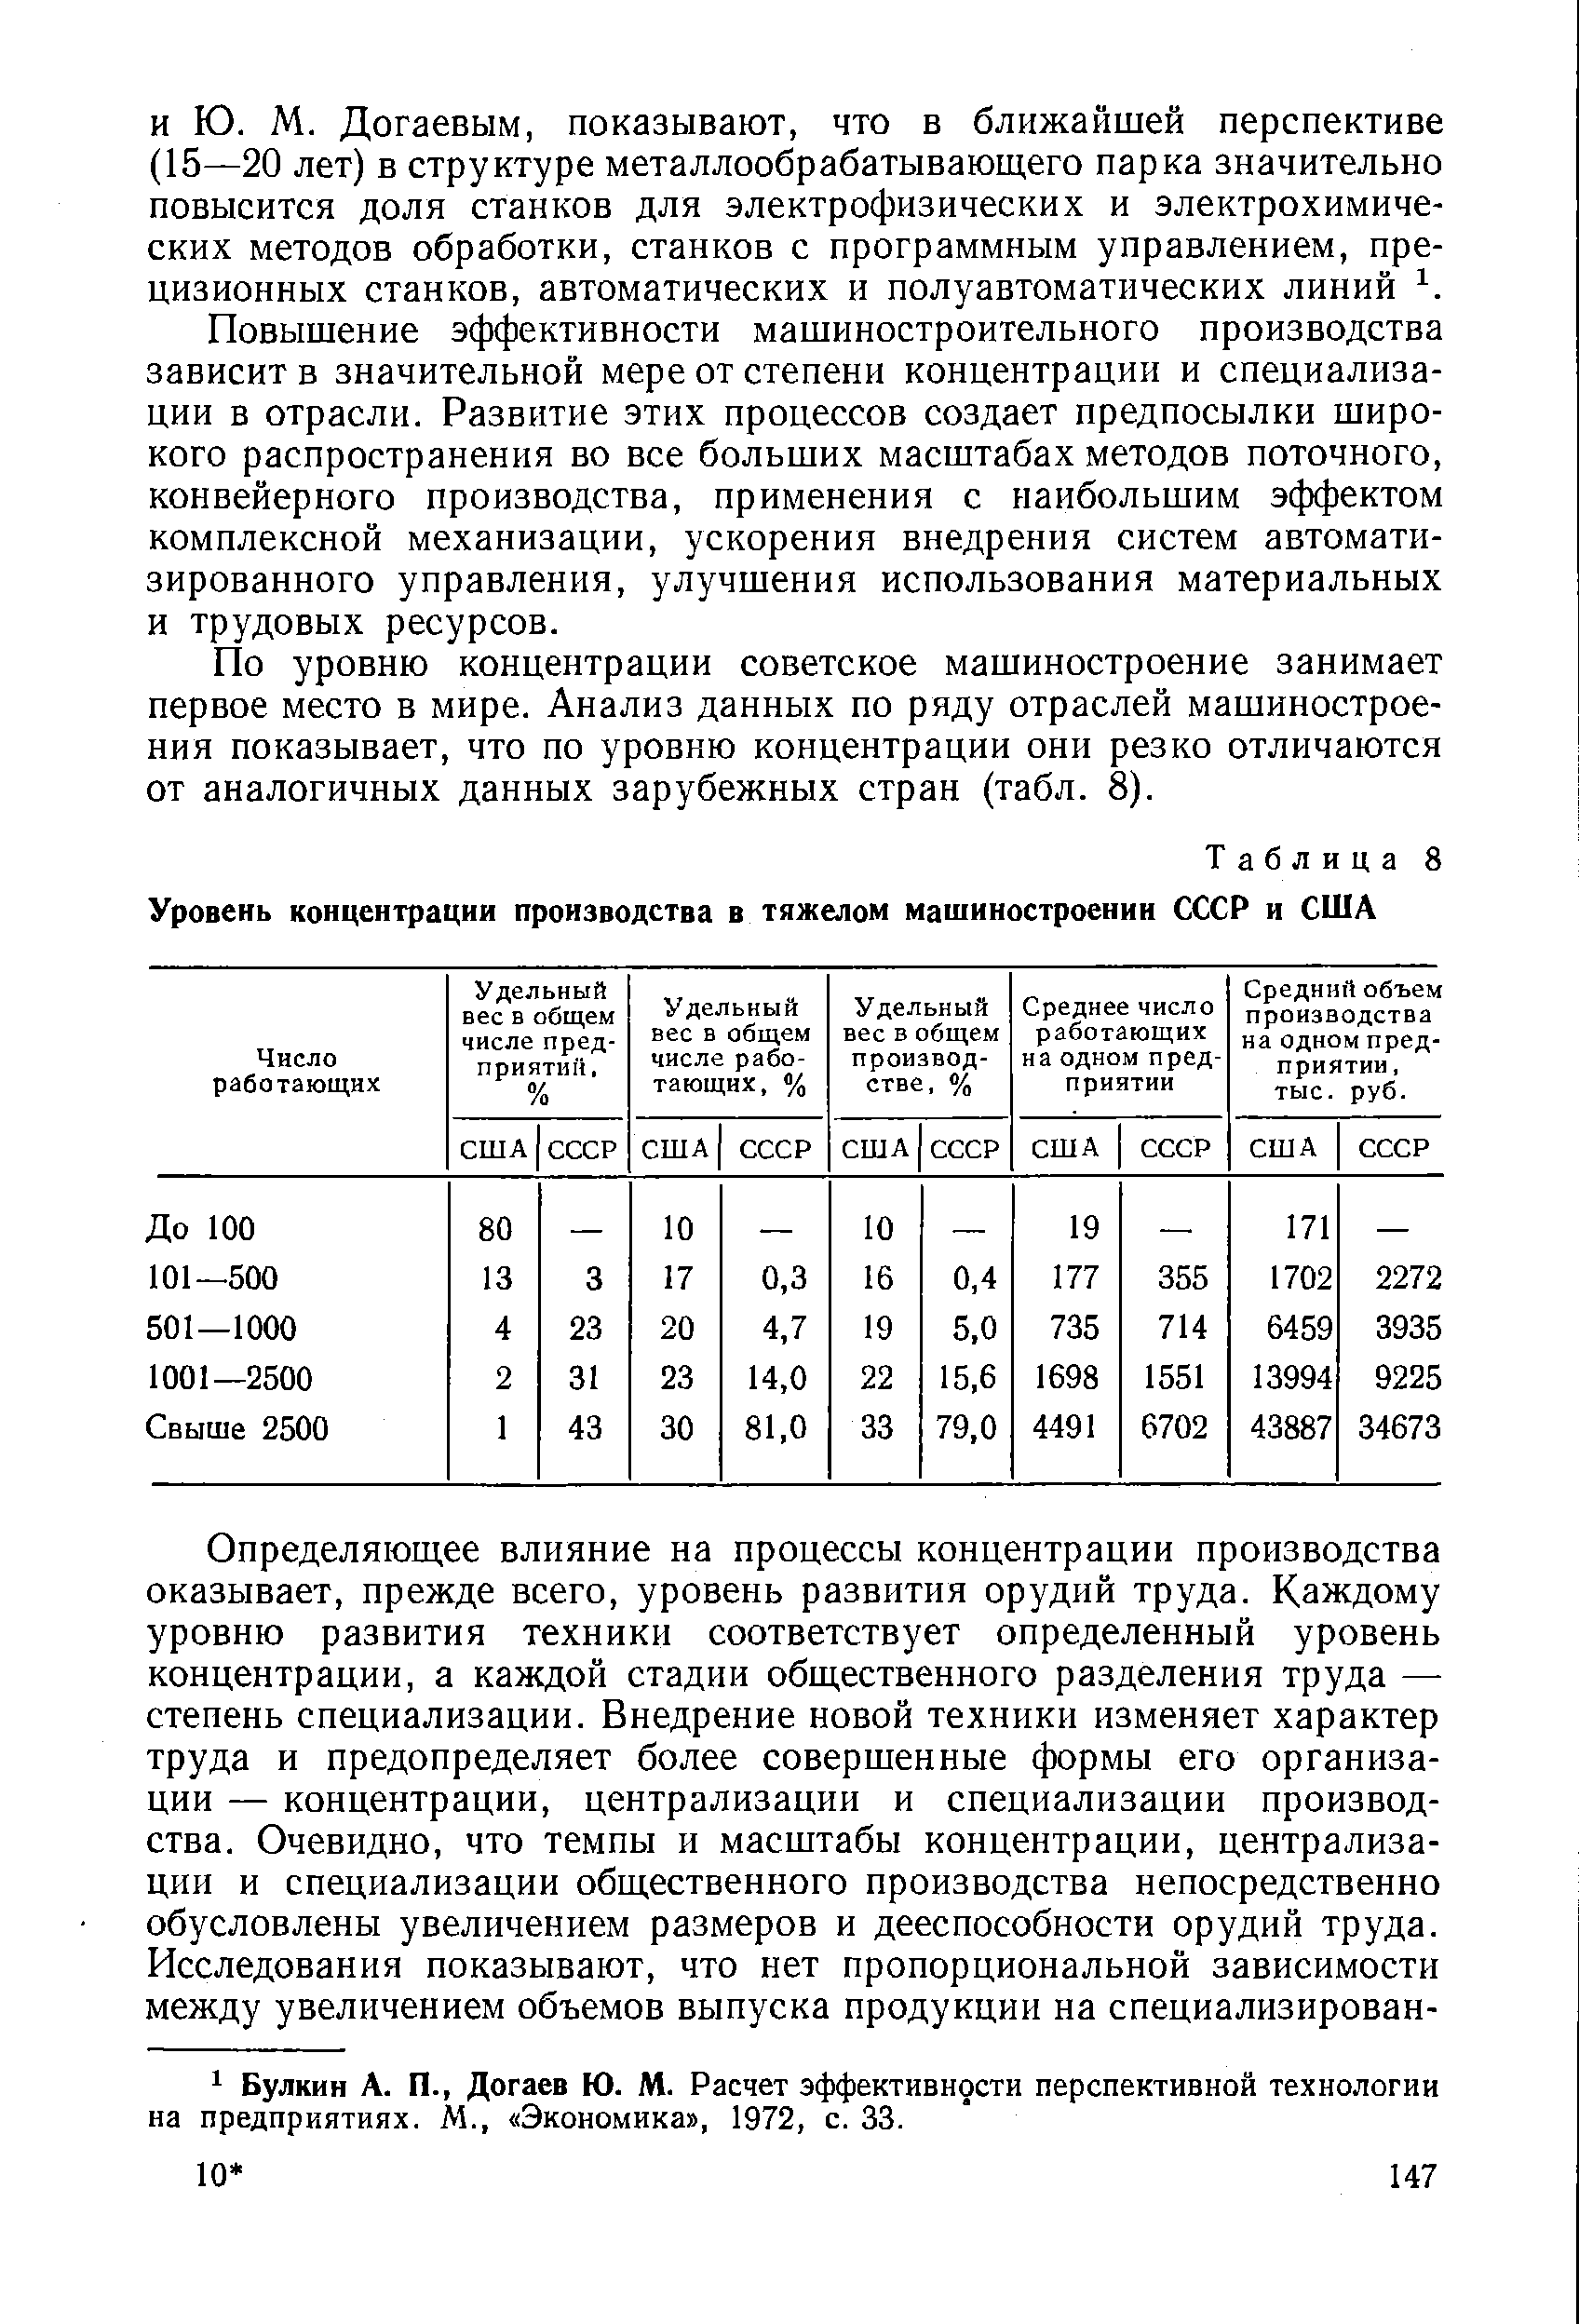 Таблица 8 Уровень концентрации производства в тяжелом машиностроении СССР и США